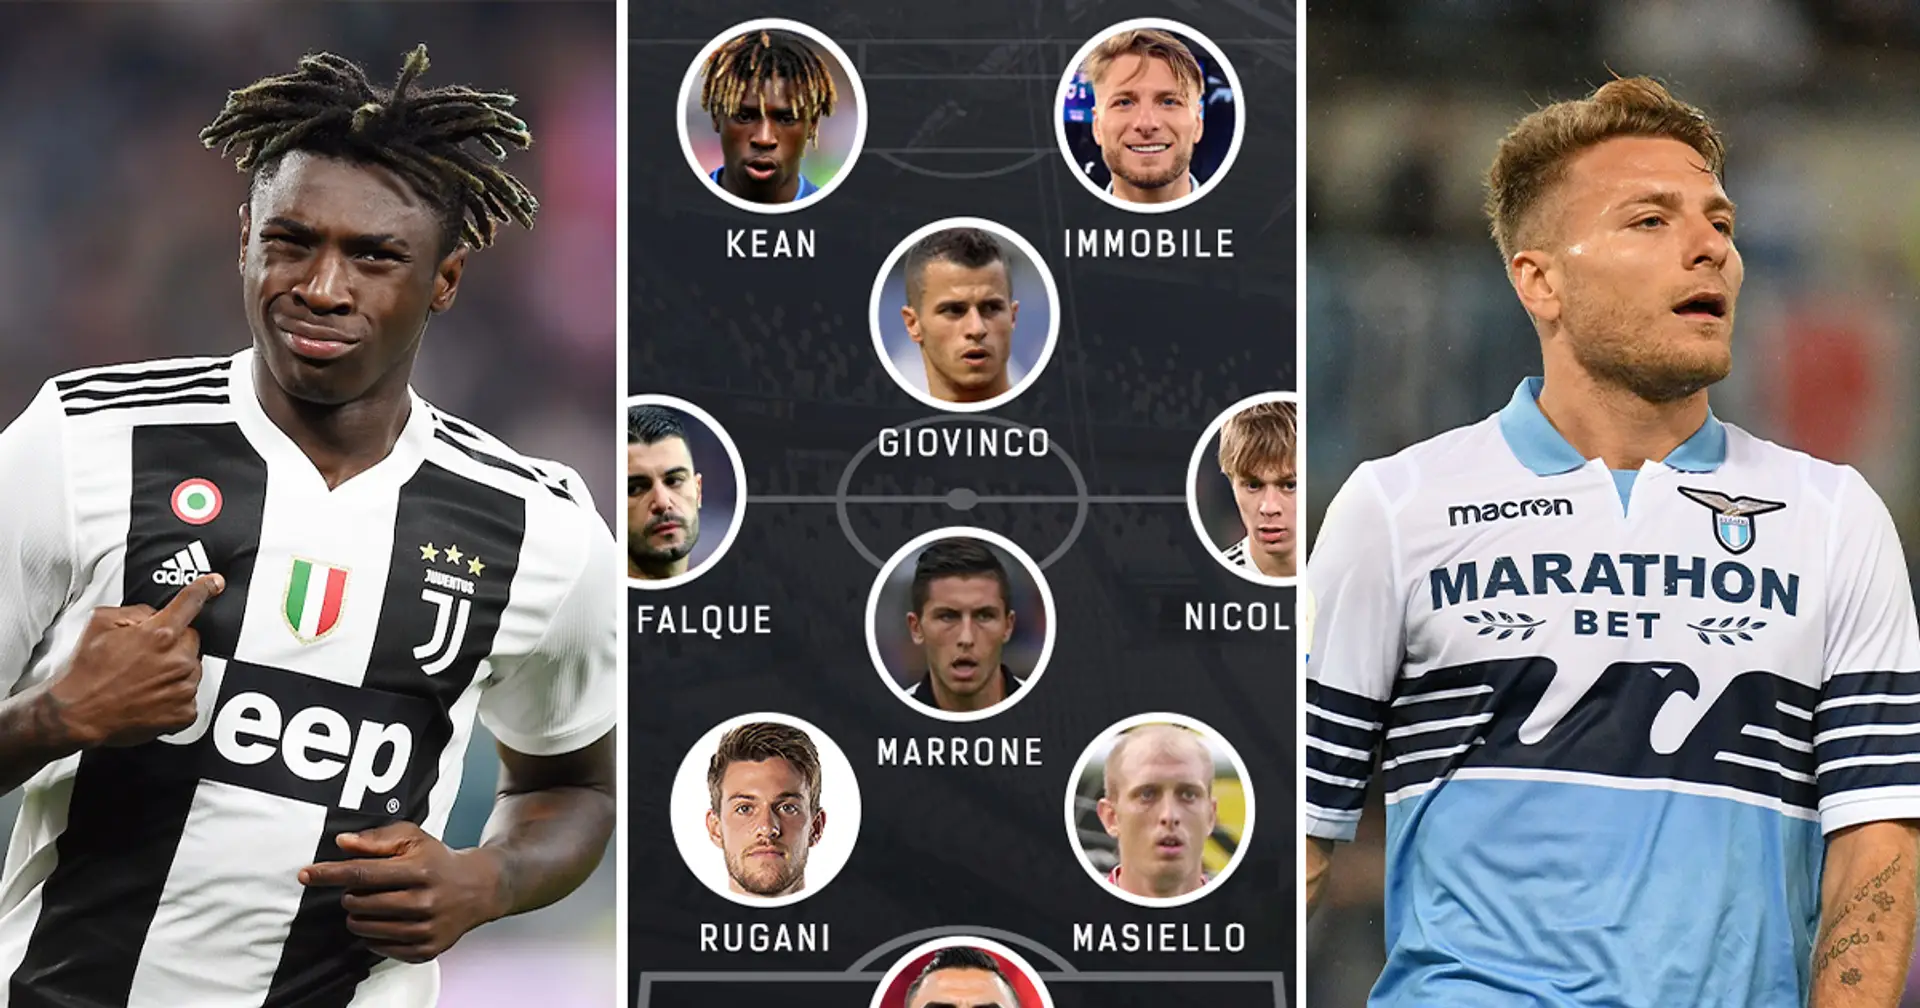 La formazione della Juventus se si potessero schierare solo giocatori passati dal settore giovanile